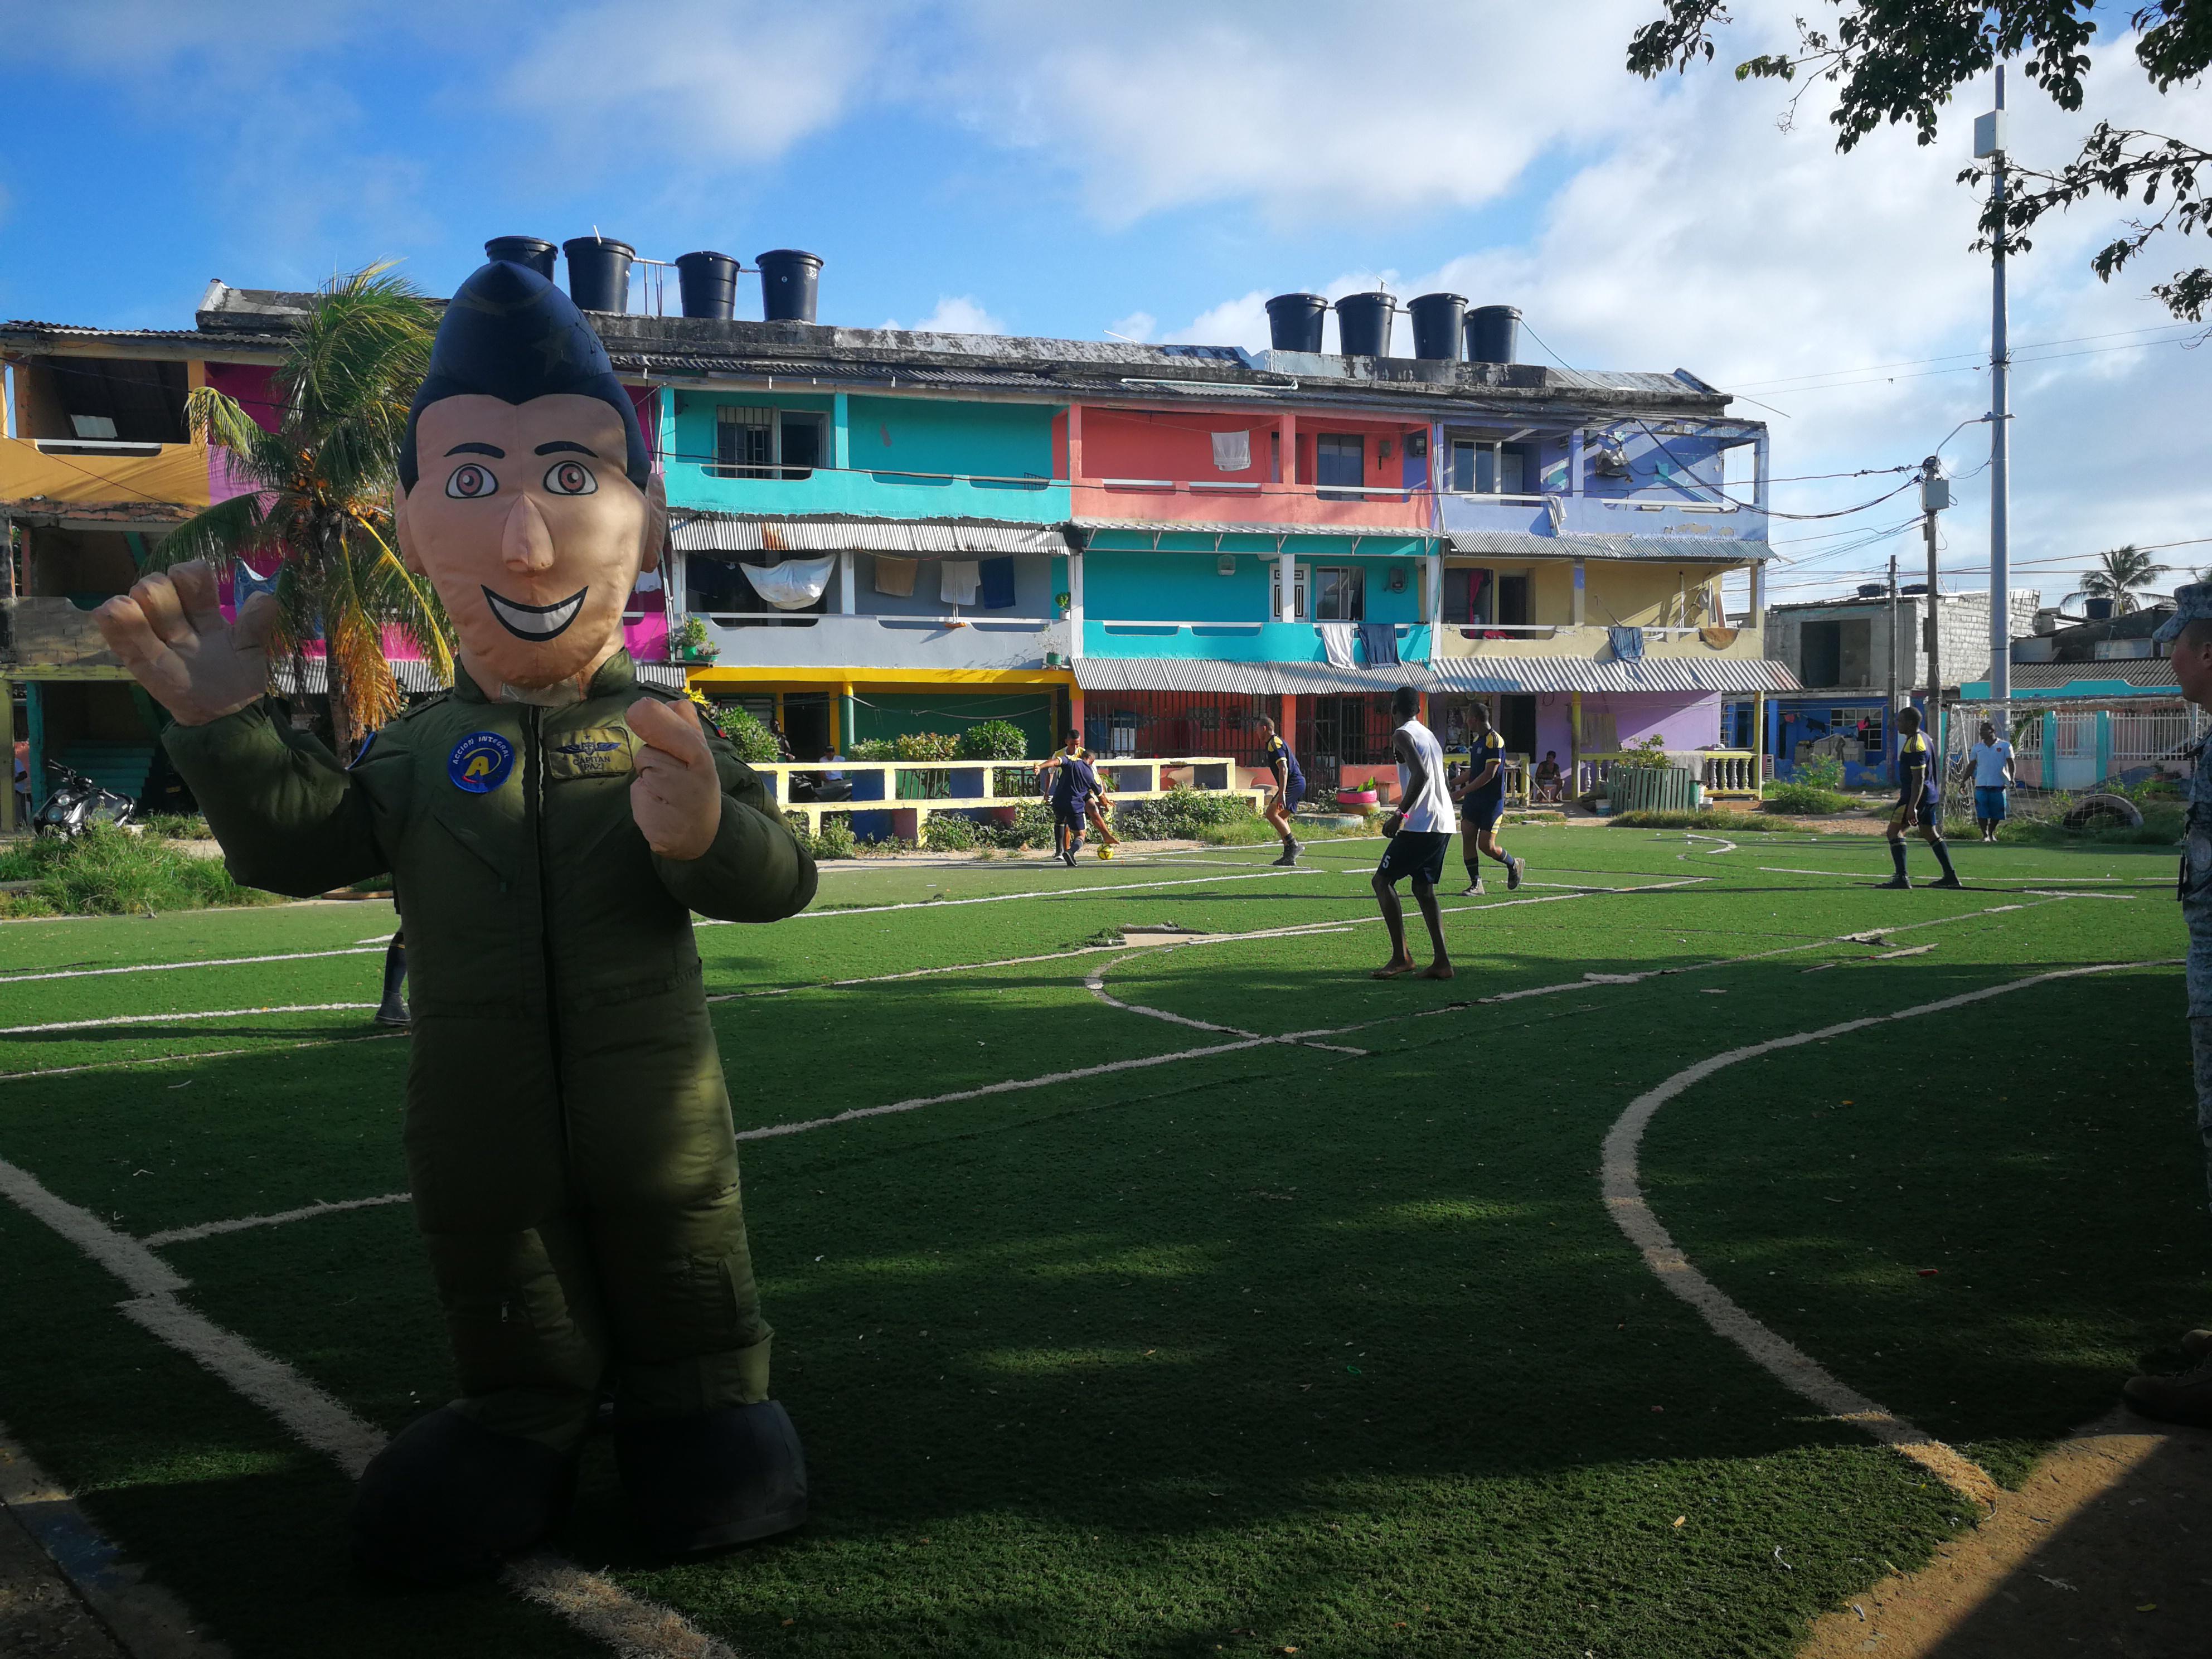 La comunidad del barrio las tablitas, experimentó una tarde educativa y recreativa en compañía de la Fuerza Aérea Colombiana